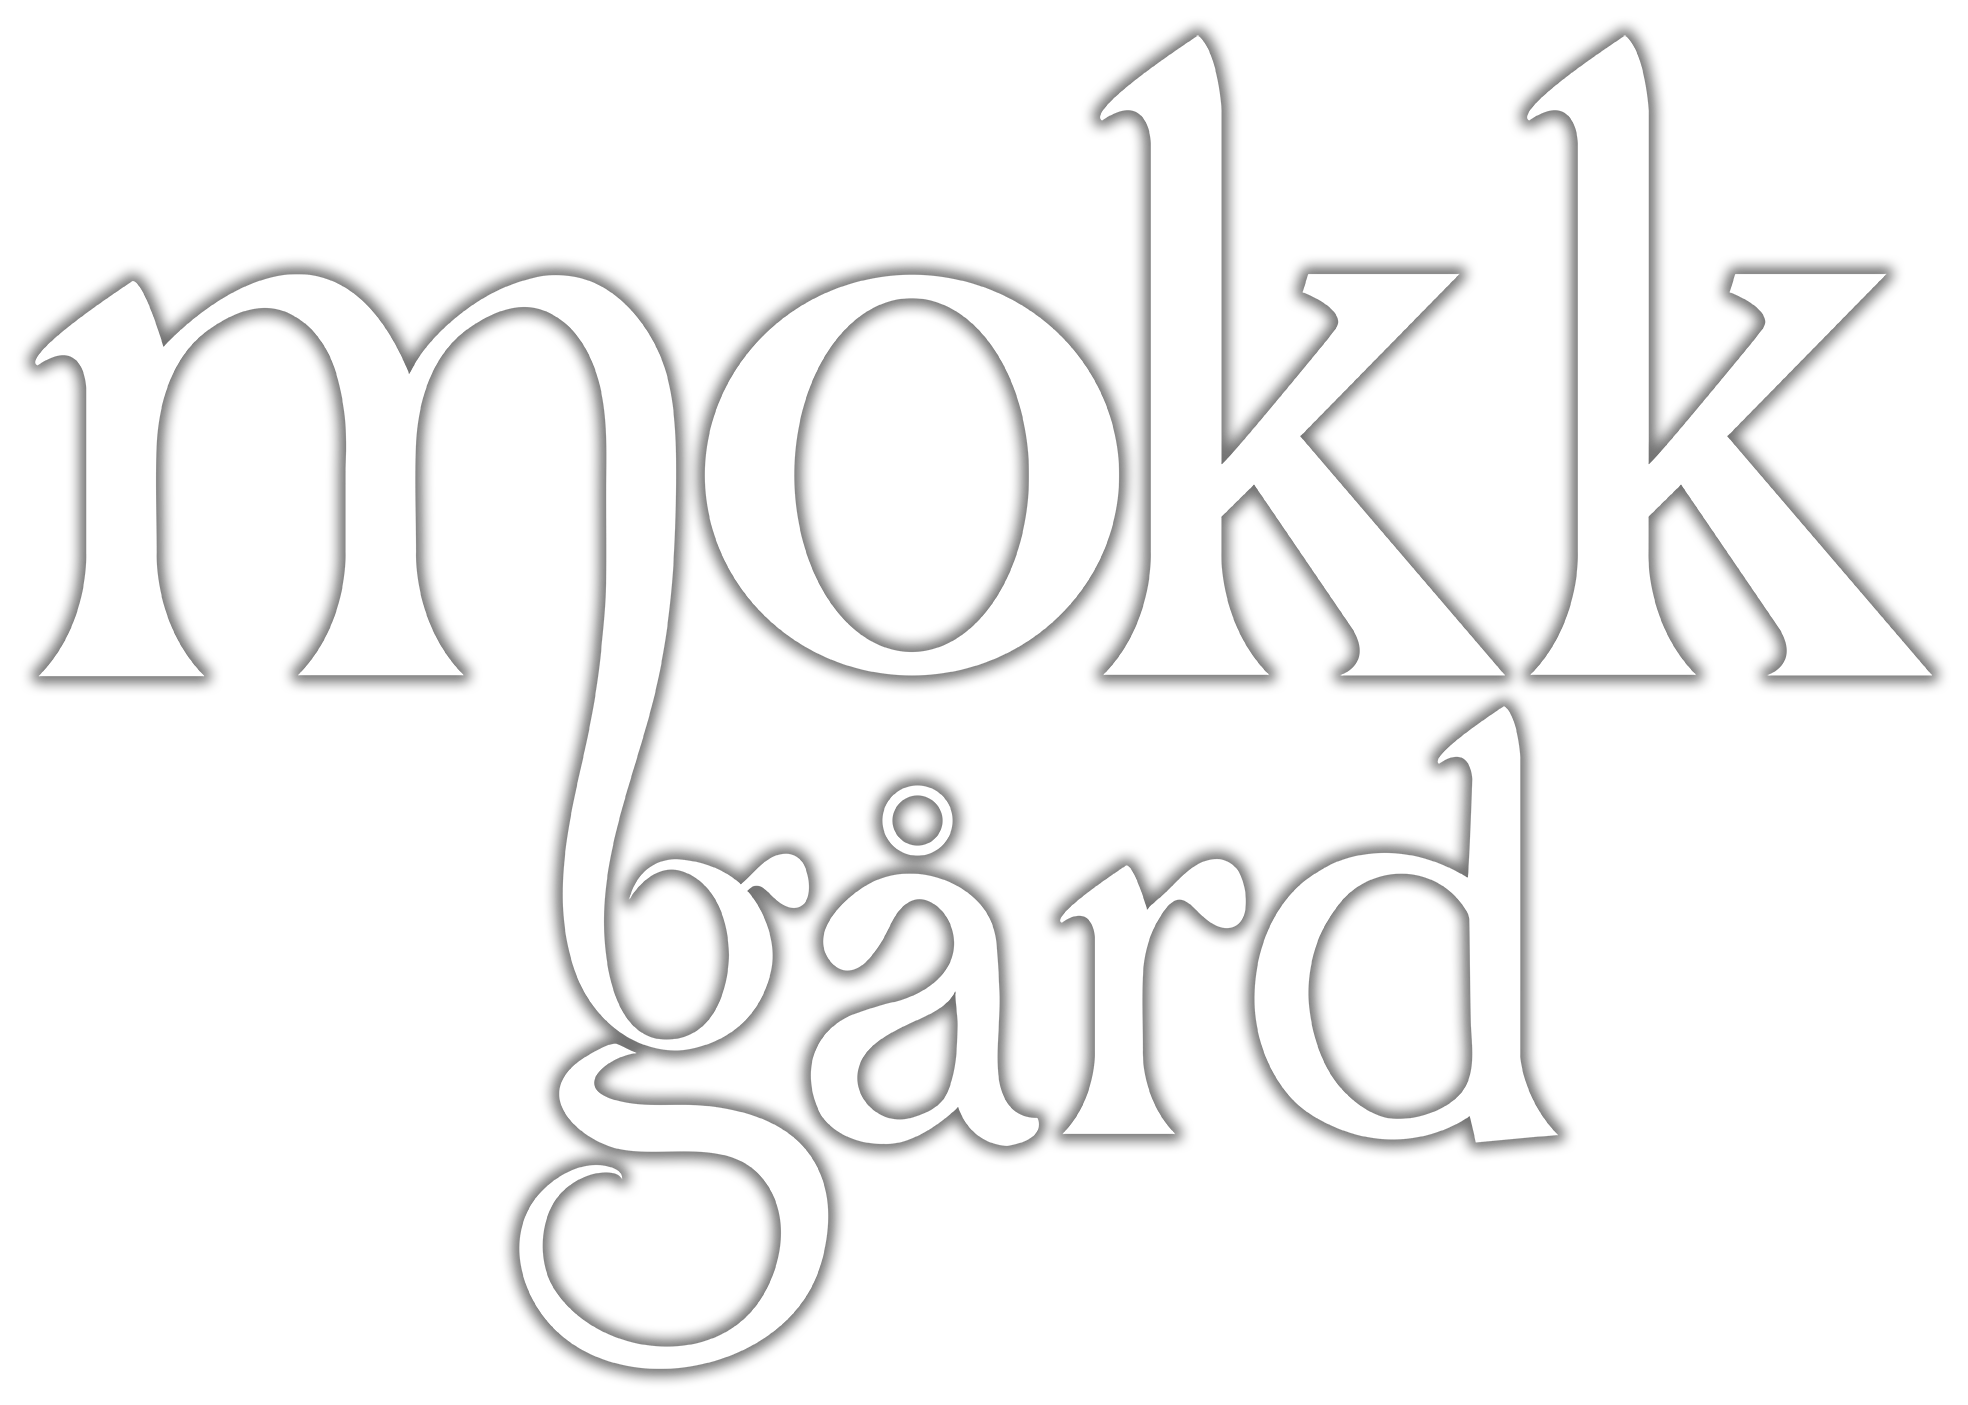 Mokk_gard-white